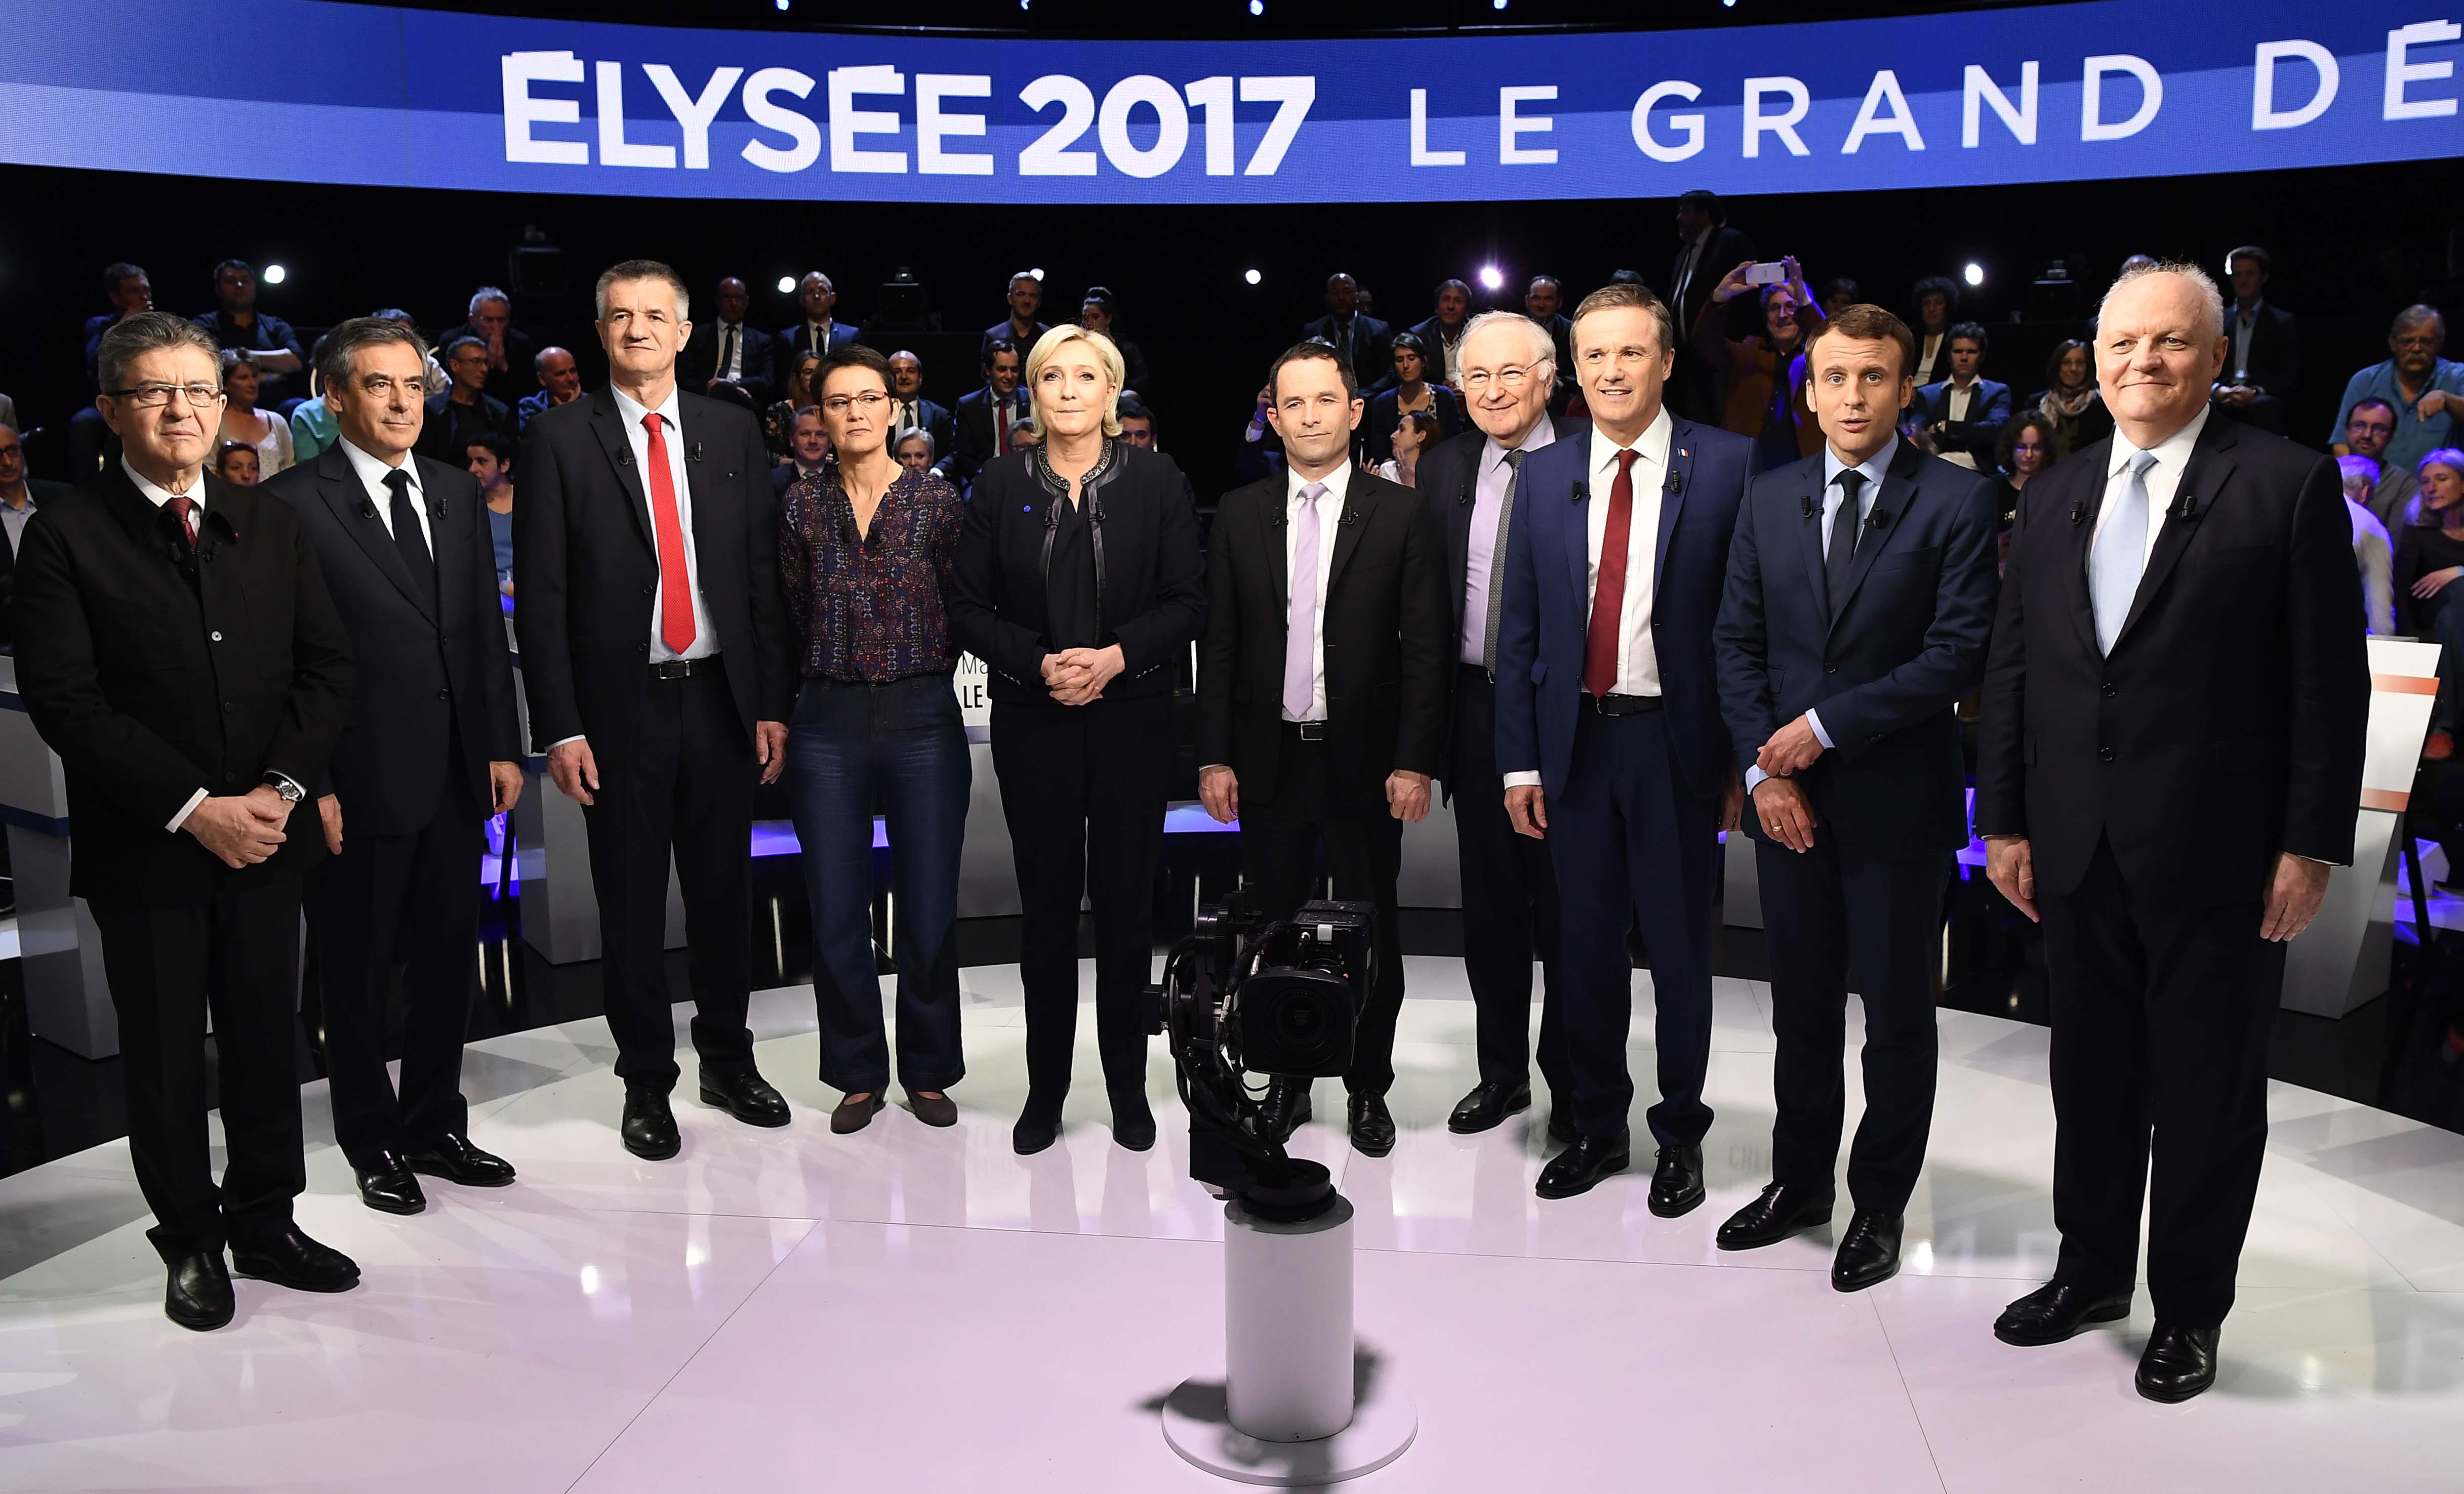 Οι «μικροί έκαναν φασαρία» στο γαλλικό προεδρικό ντιμπέιτ των 11